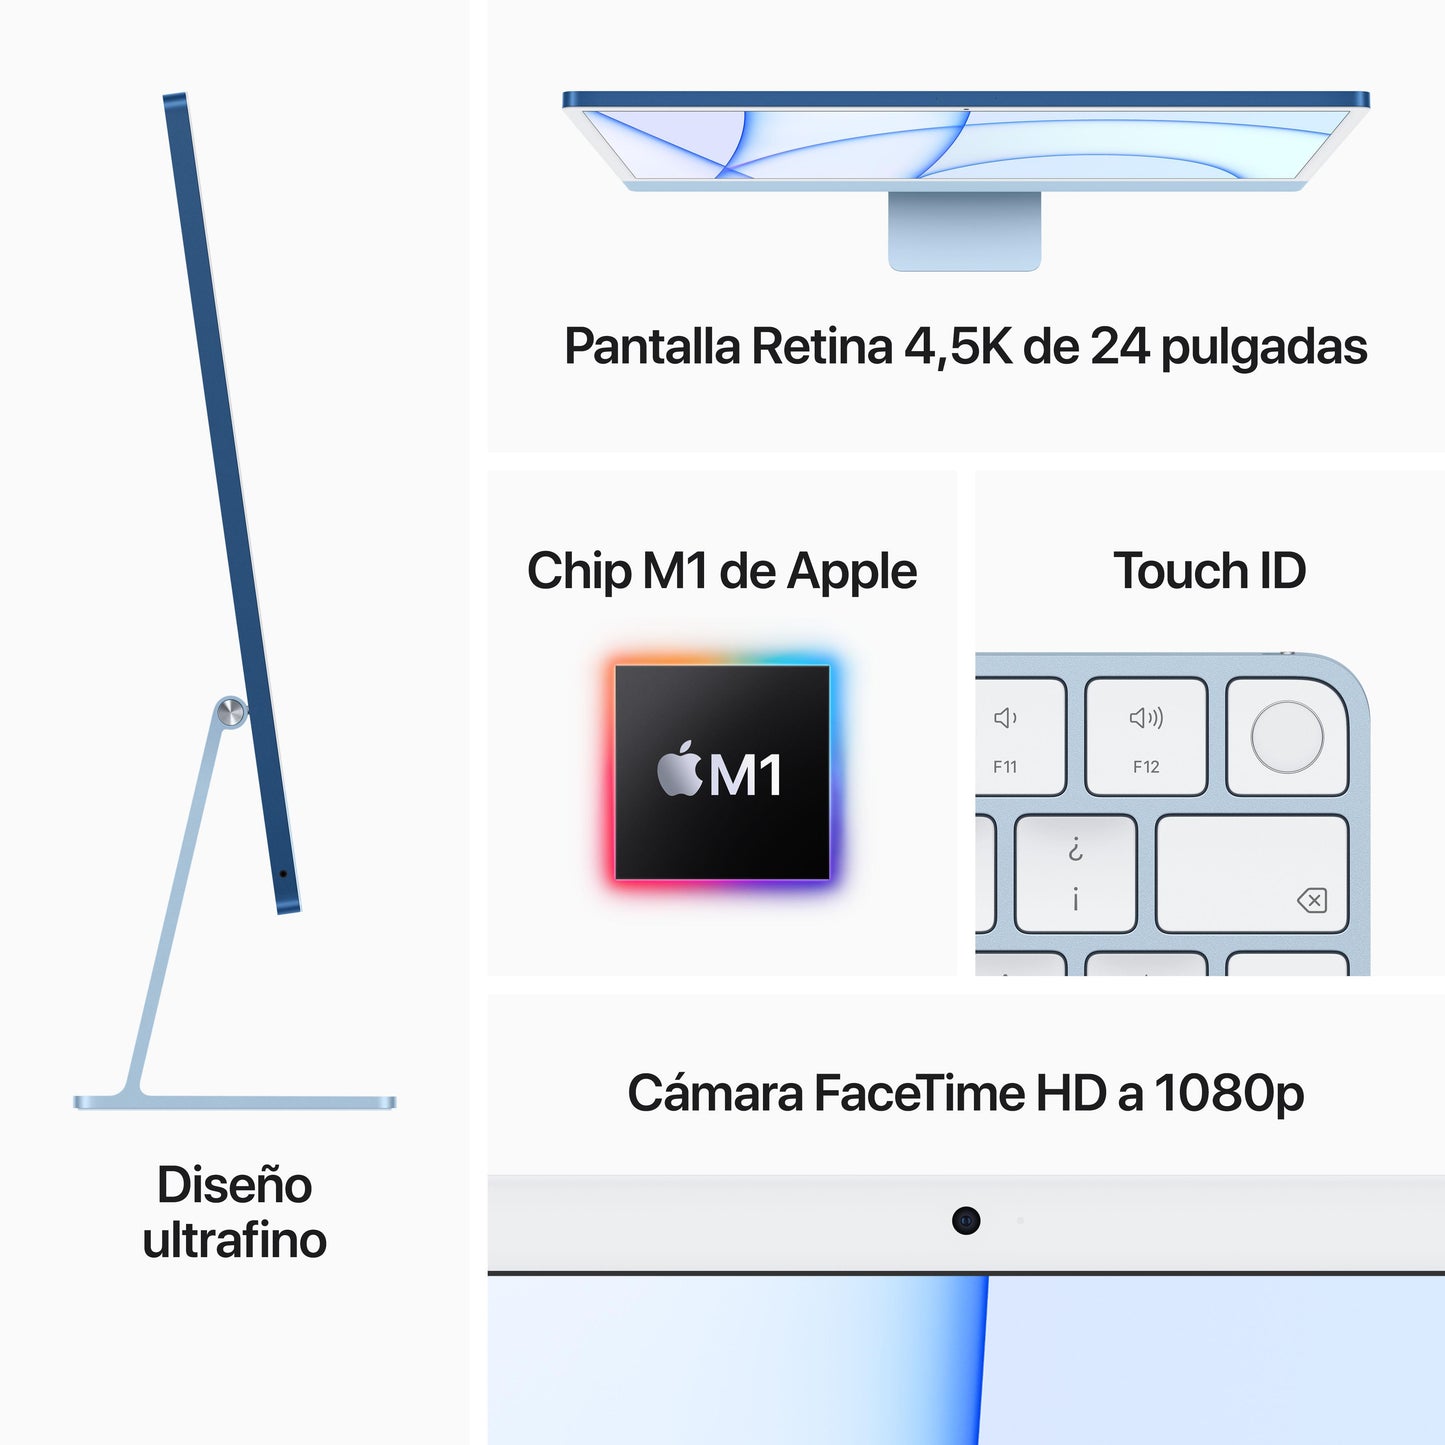 iMac con pantalla Retina 4,5K de 24 pulgadas: Chip M1 de Apple con CPU de ocho núcleos y GPU de ocho núcleos, 512 GB SSD - Rosa - Rossellimac